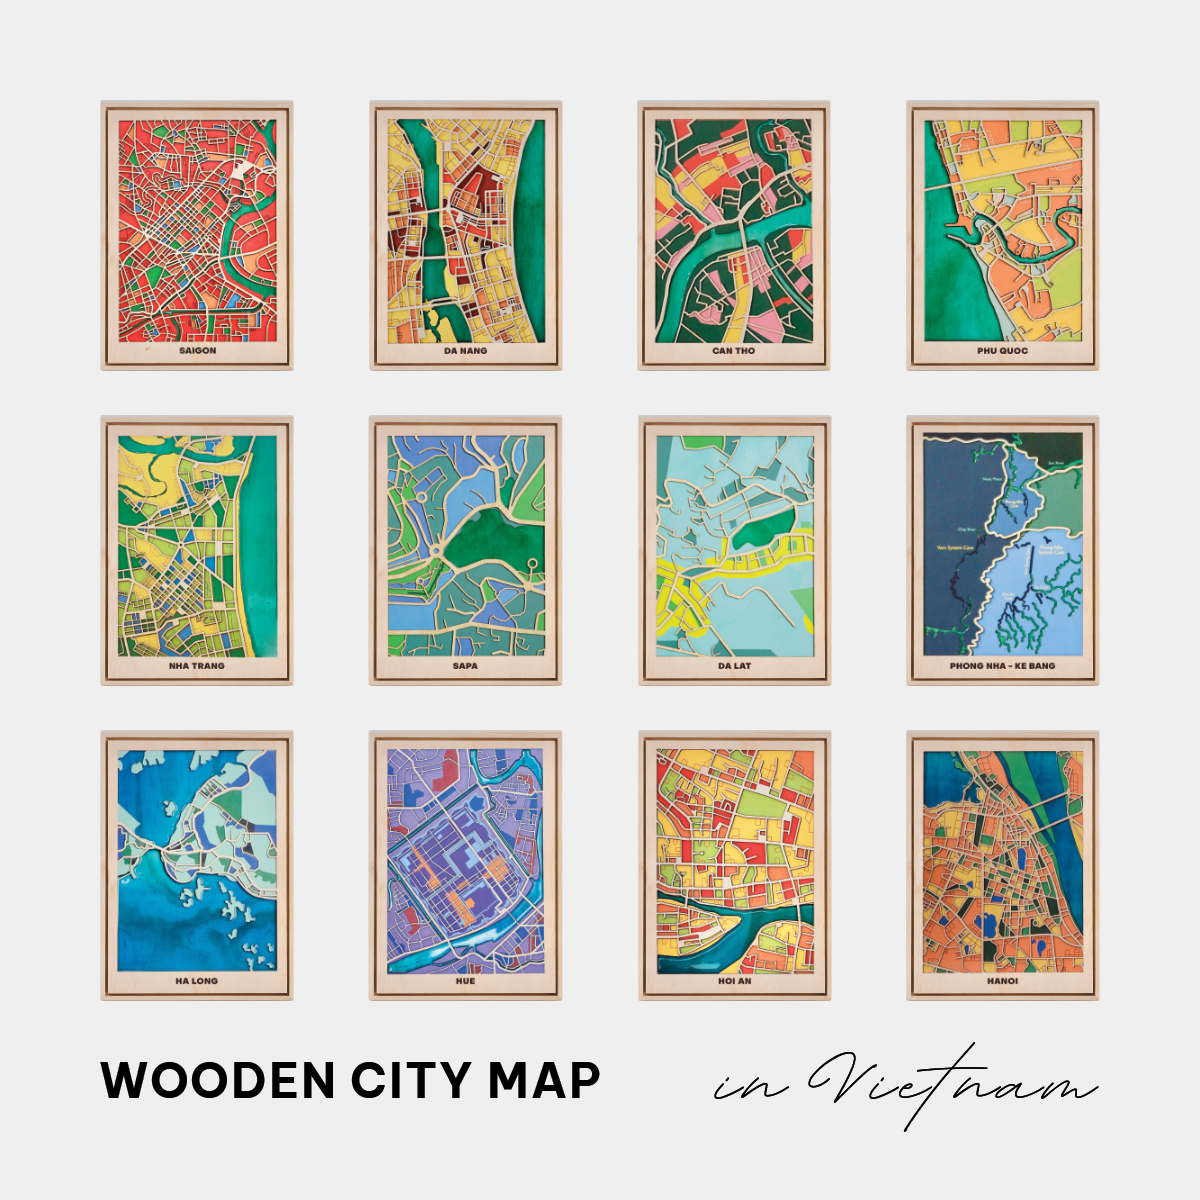  Wooden City Map Việt Nam - Sài Gòn 